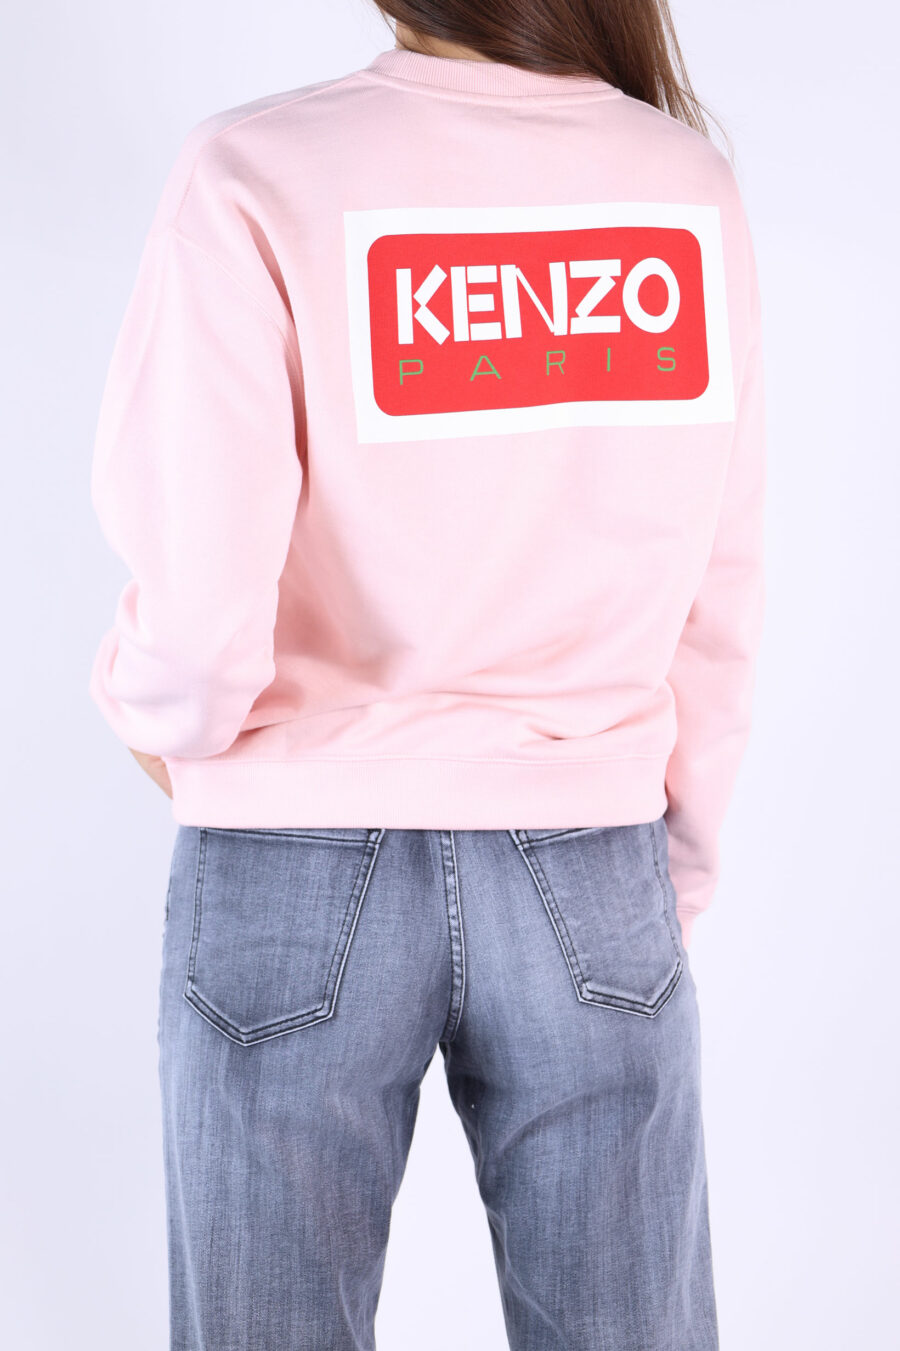 Camisola cor-de-rosa com maxilogo "kenzo paris" nas costas - 361223054662201685